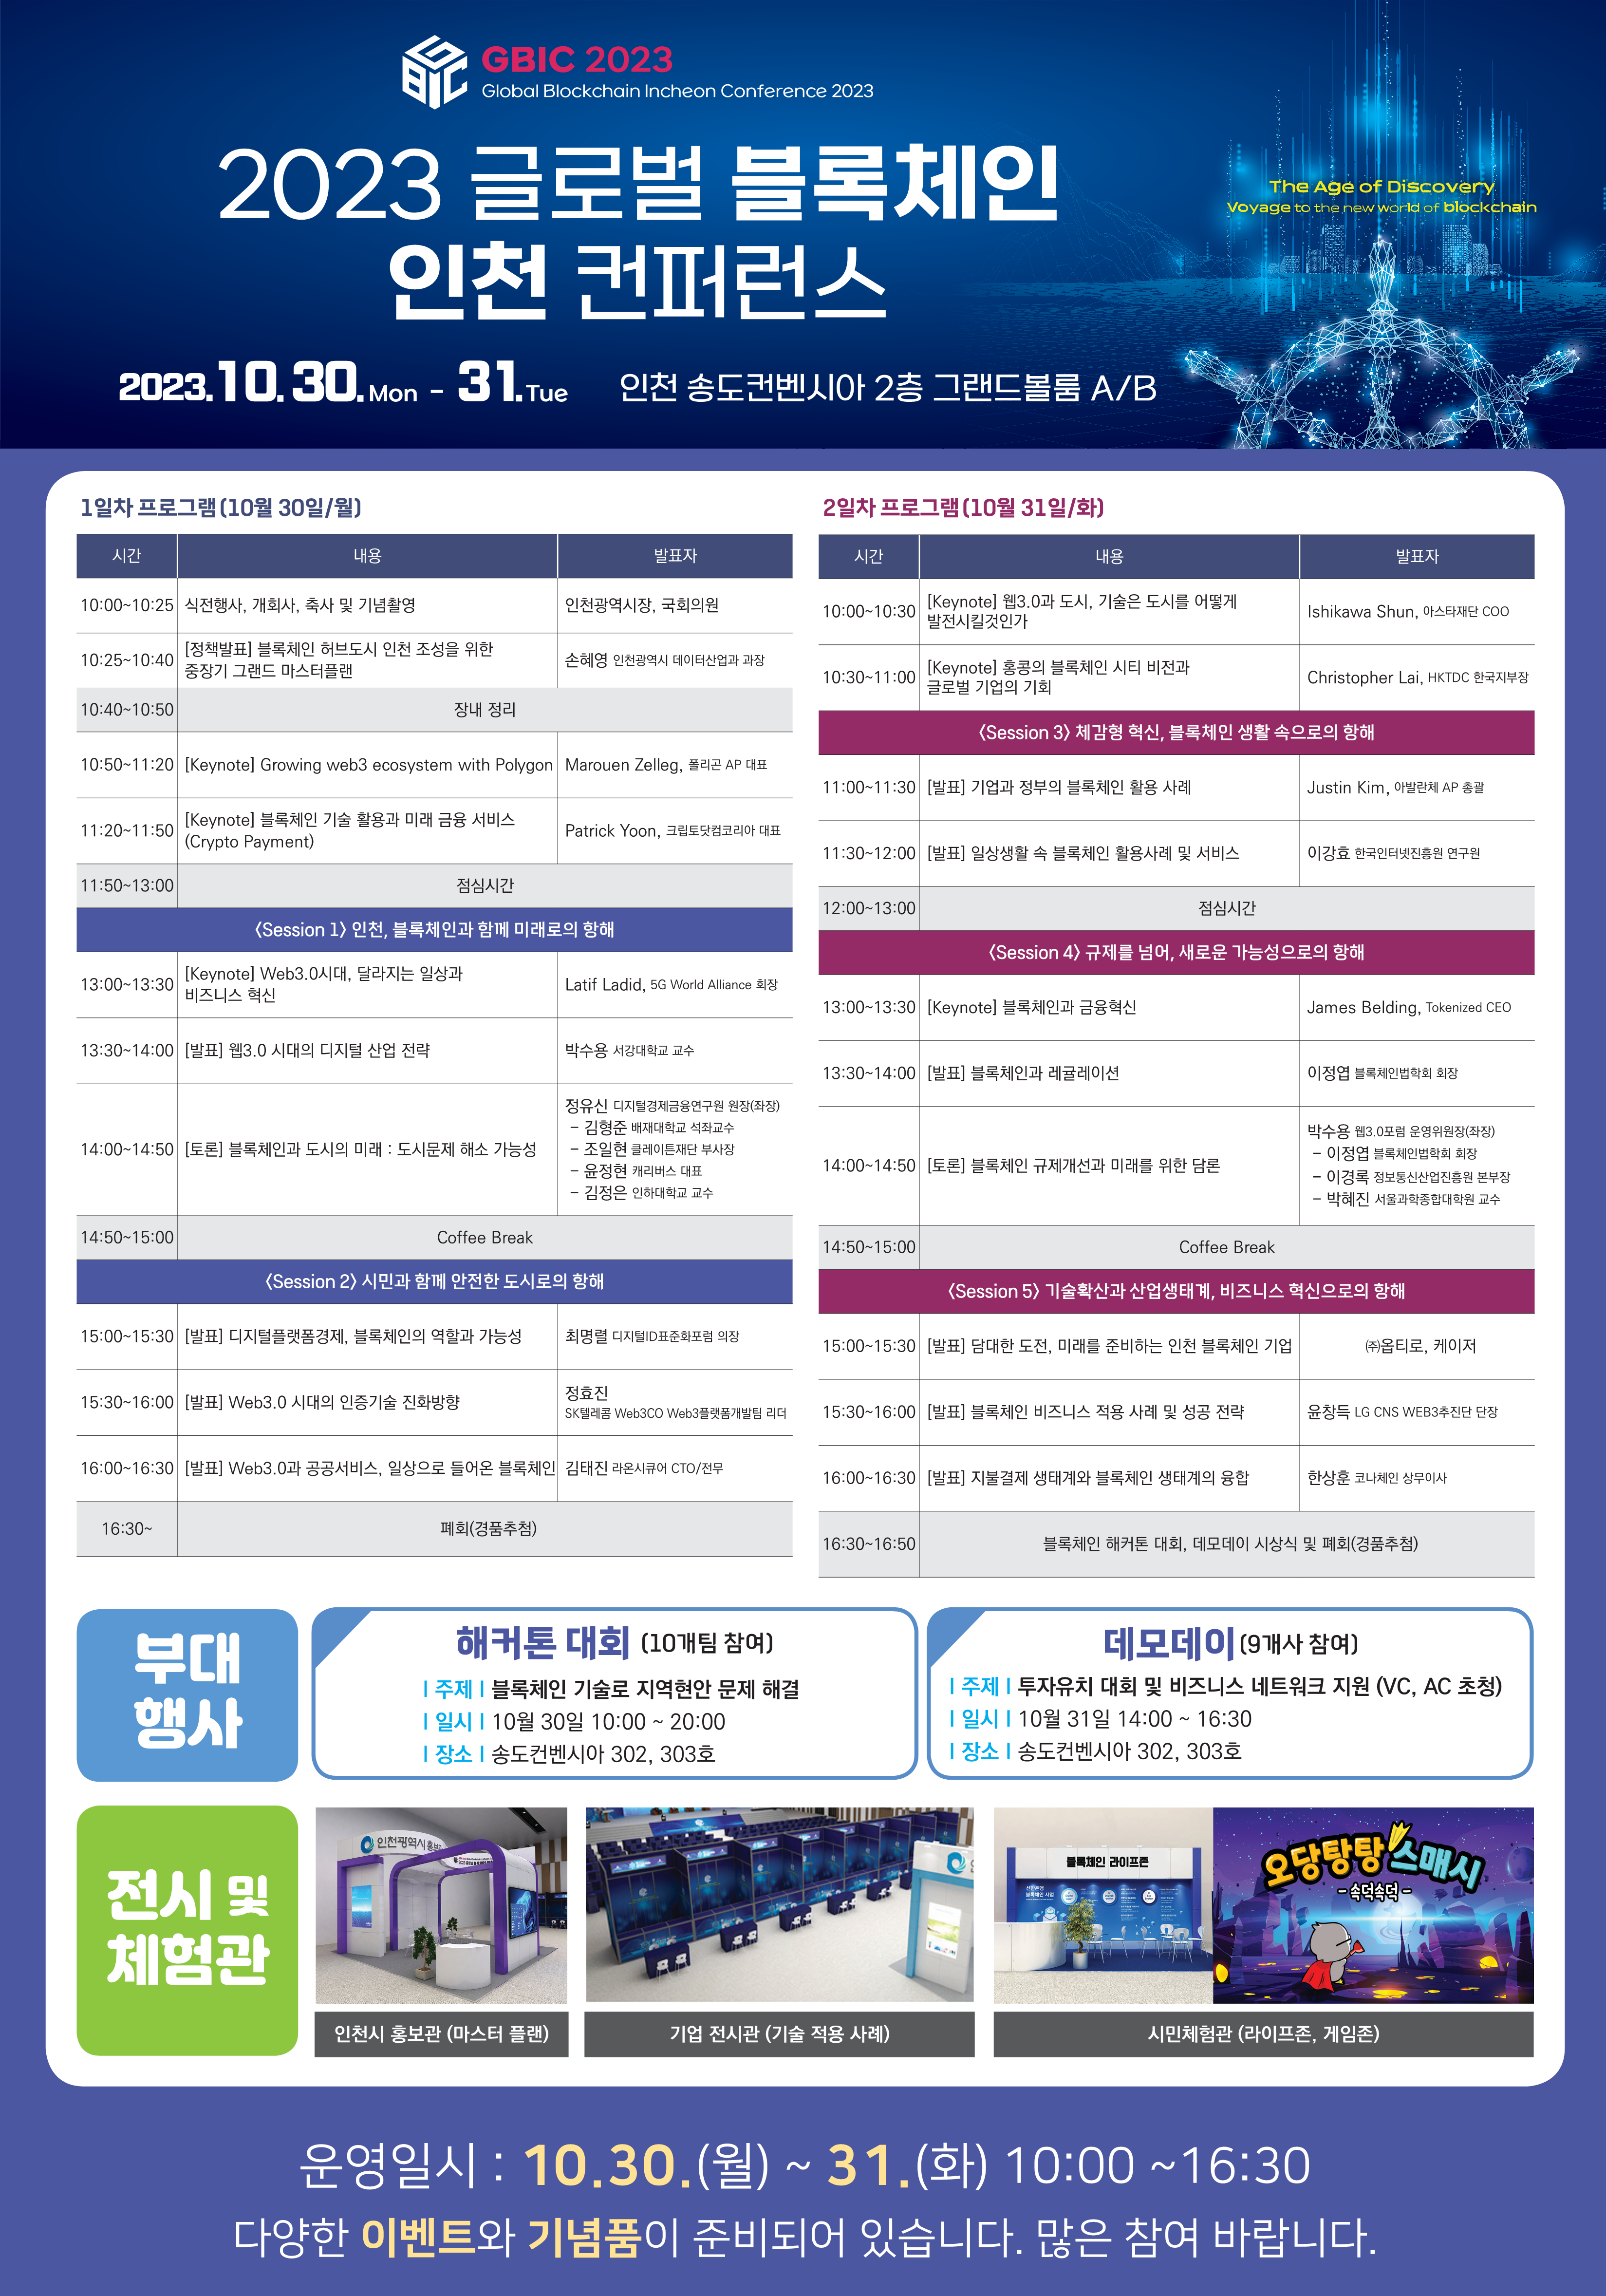 2023 글로벌 블록체인 인천 컨퍼런스, 30일 송도서 열려 관련 이미지